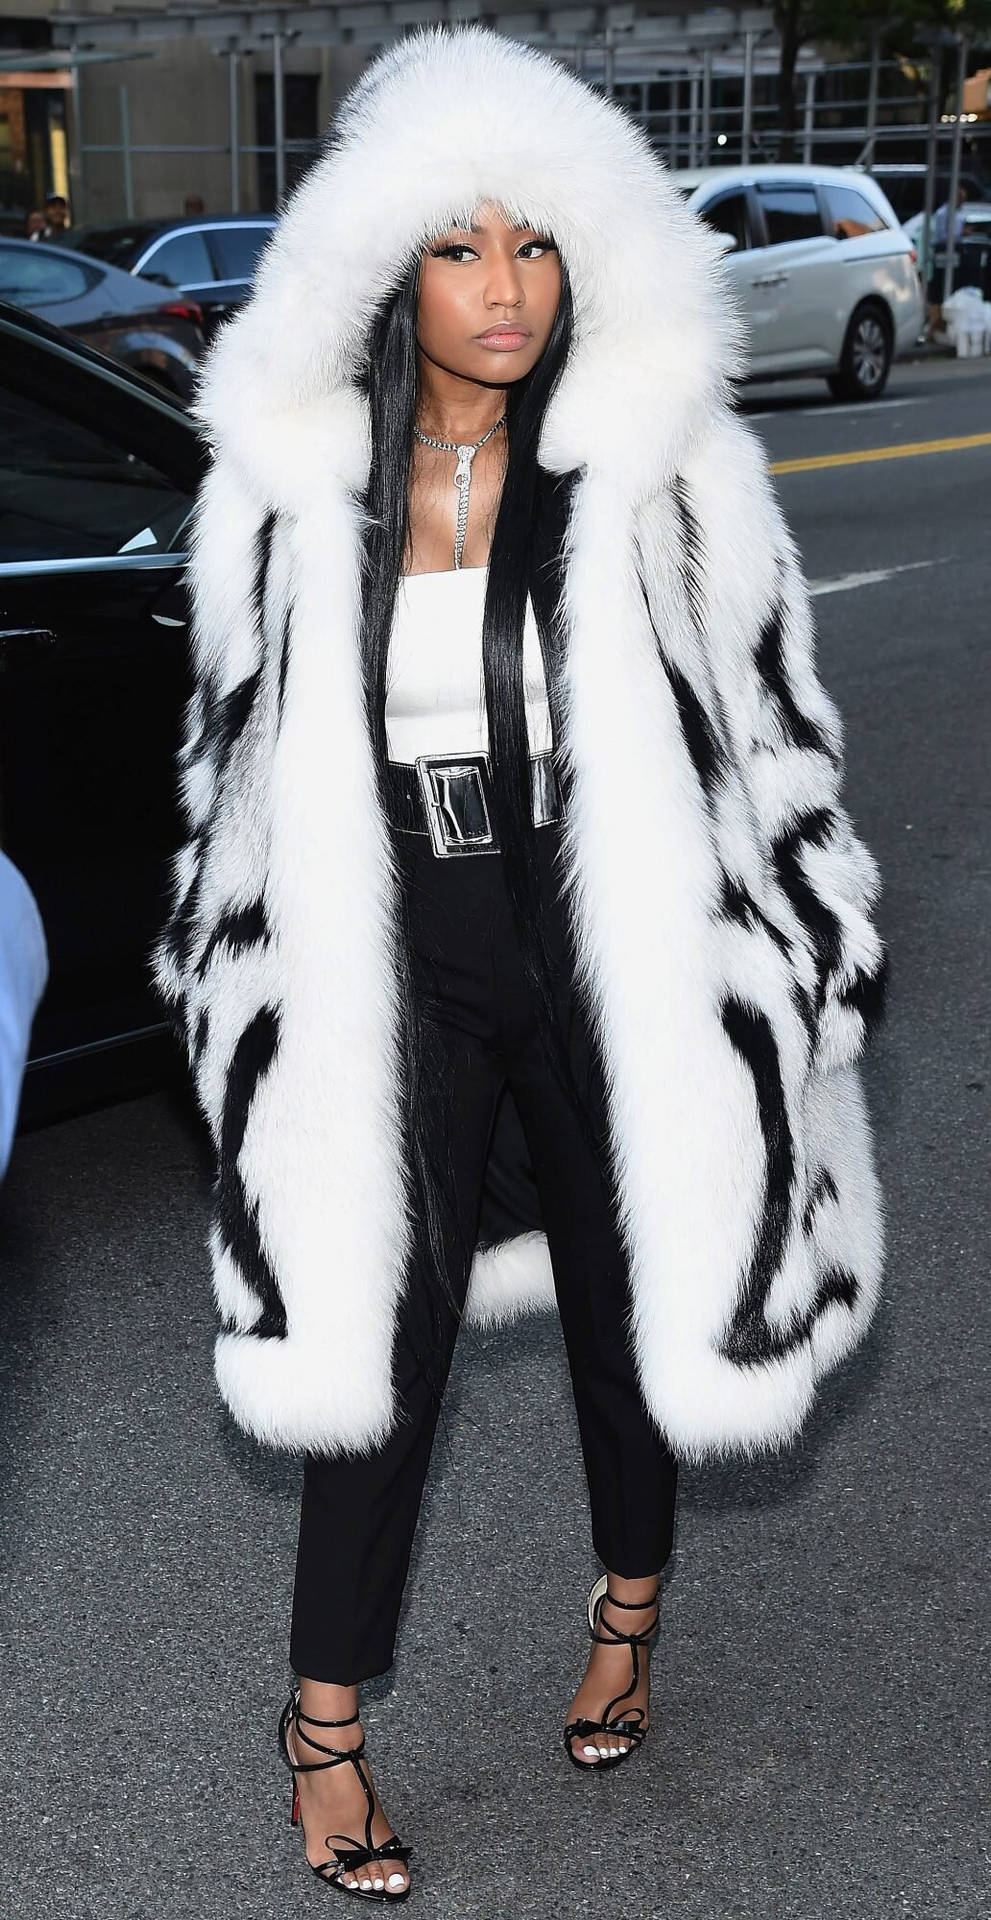 Nicki Minaj wearing animal fur coat wallpaper